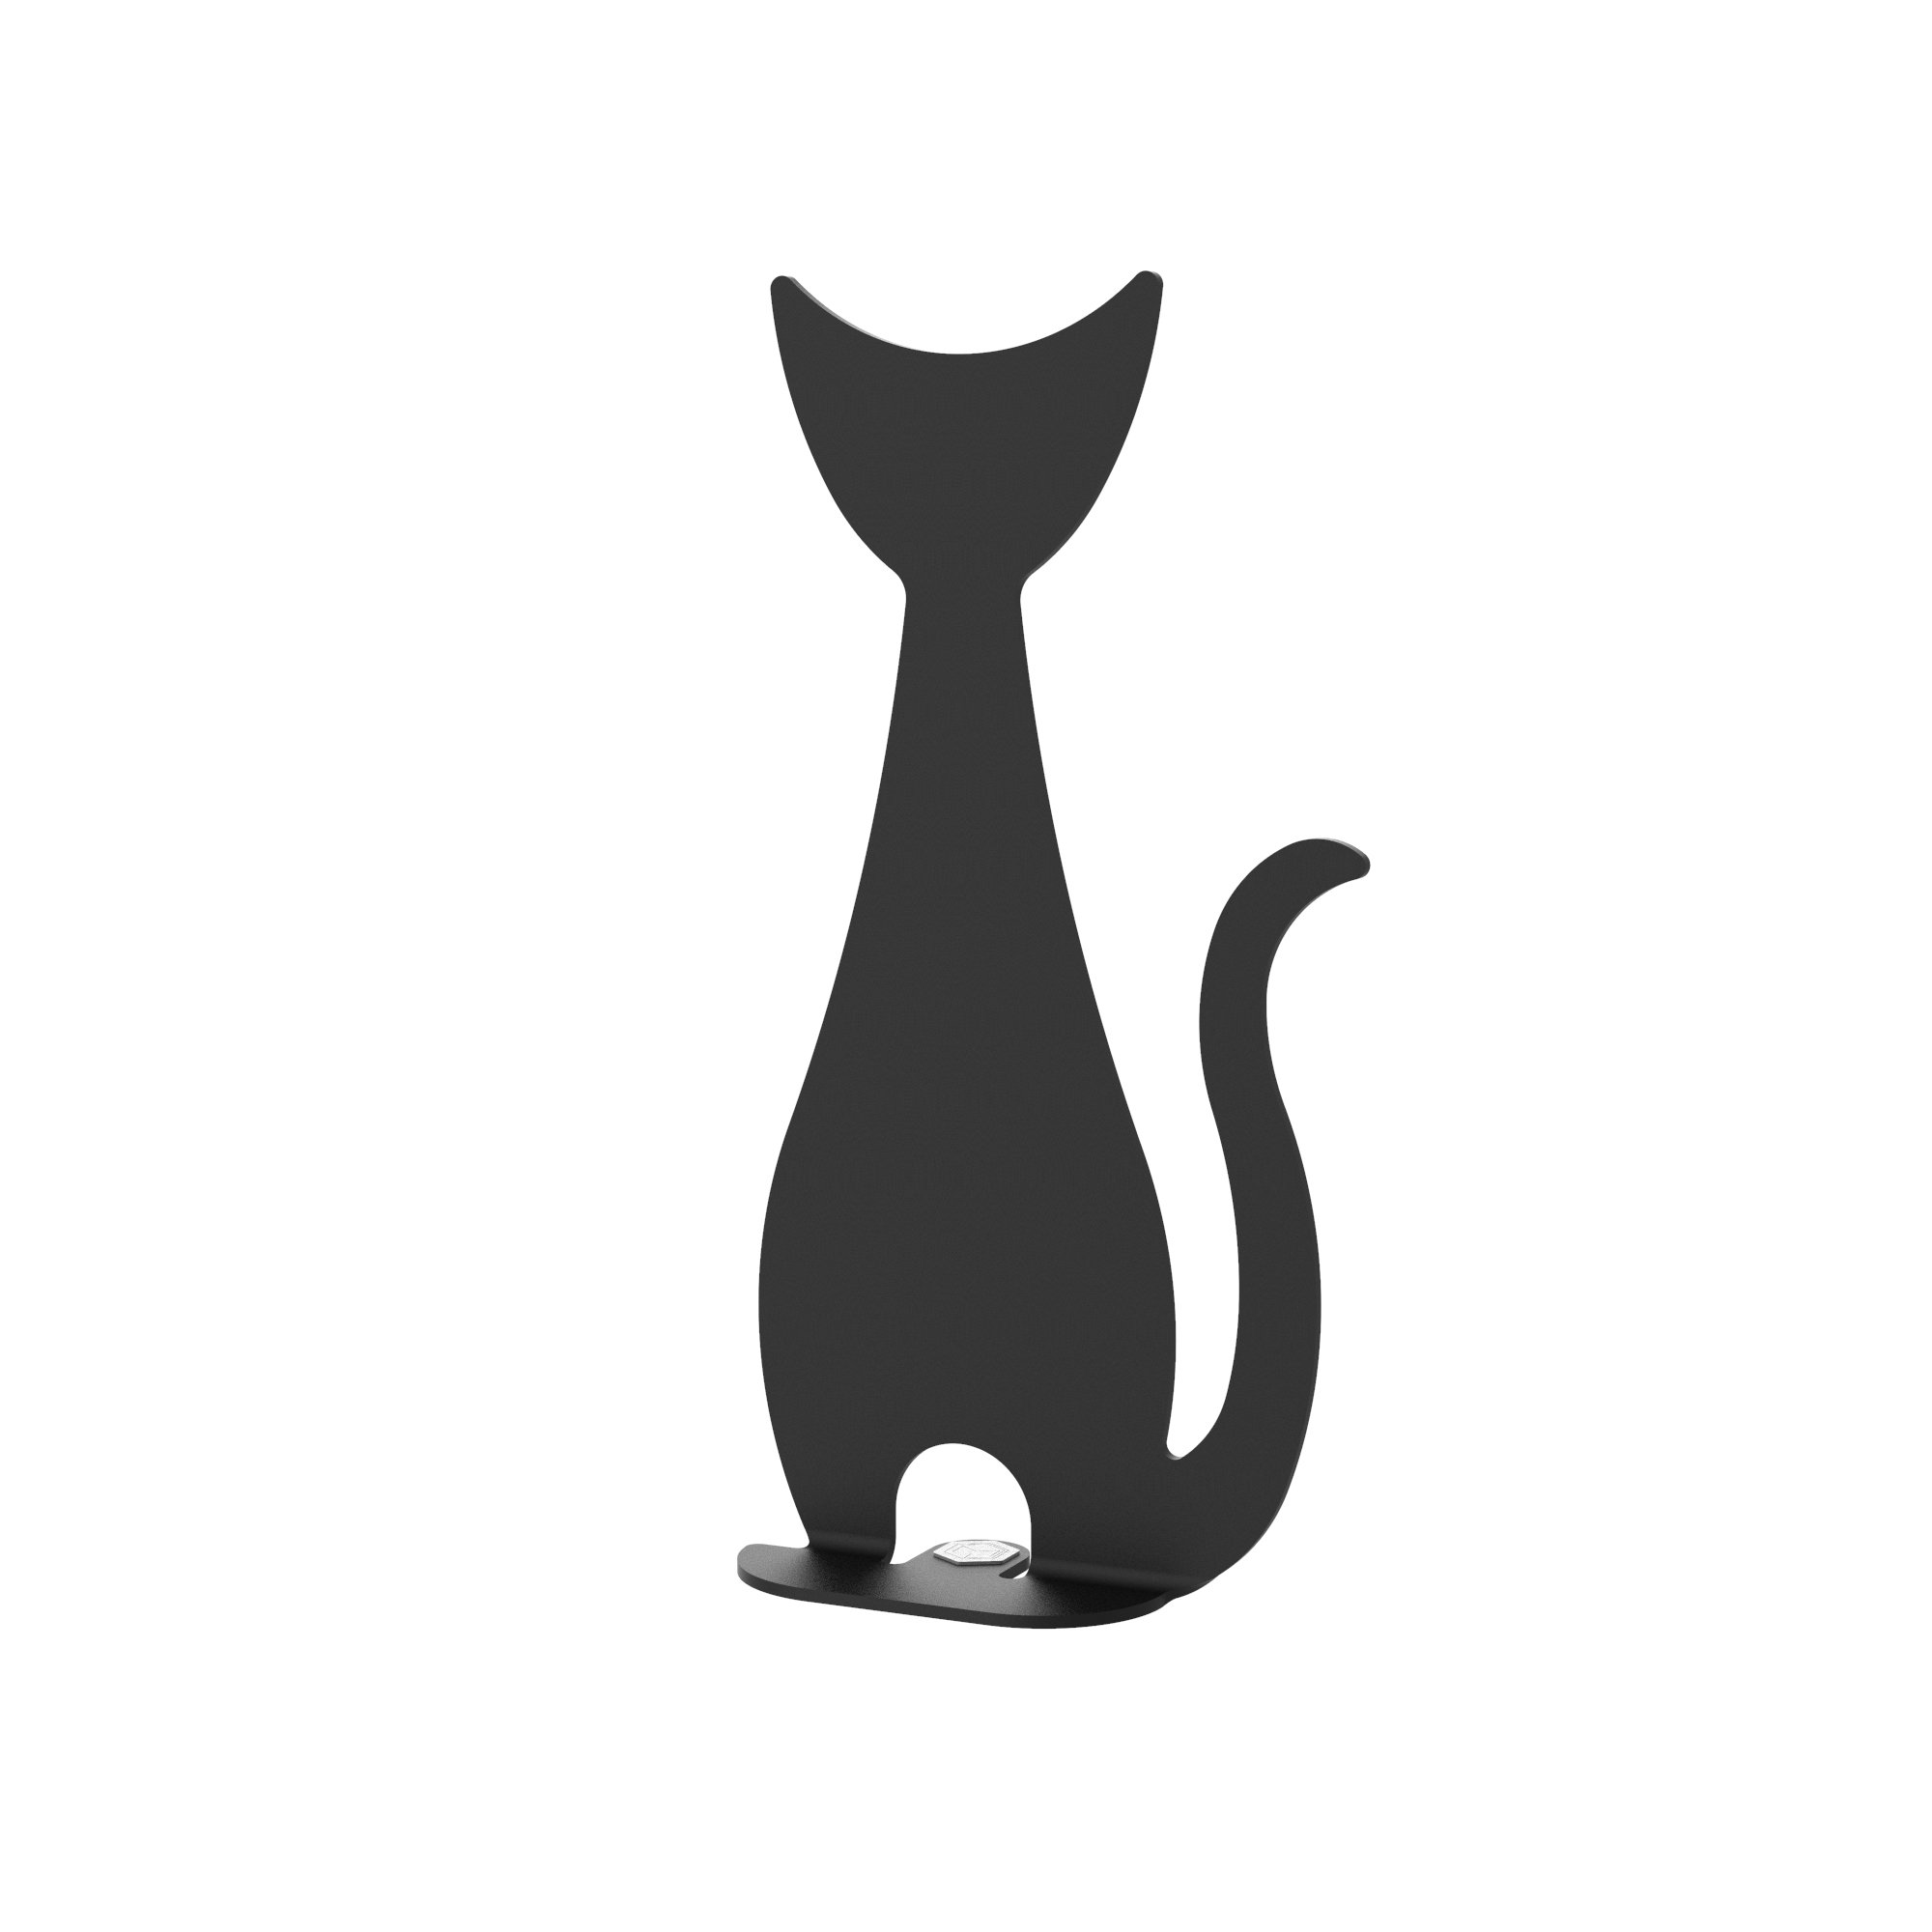 Dekorationsfigur Katze aus Metall, schwarz, Höhe 20 cm